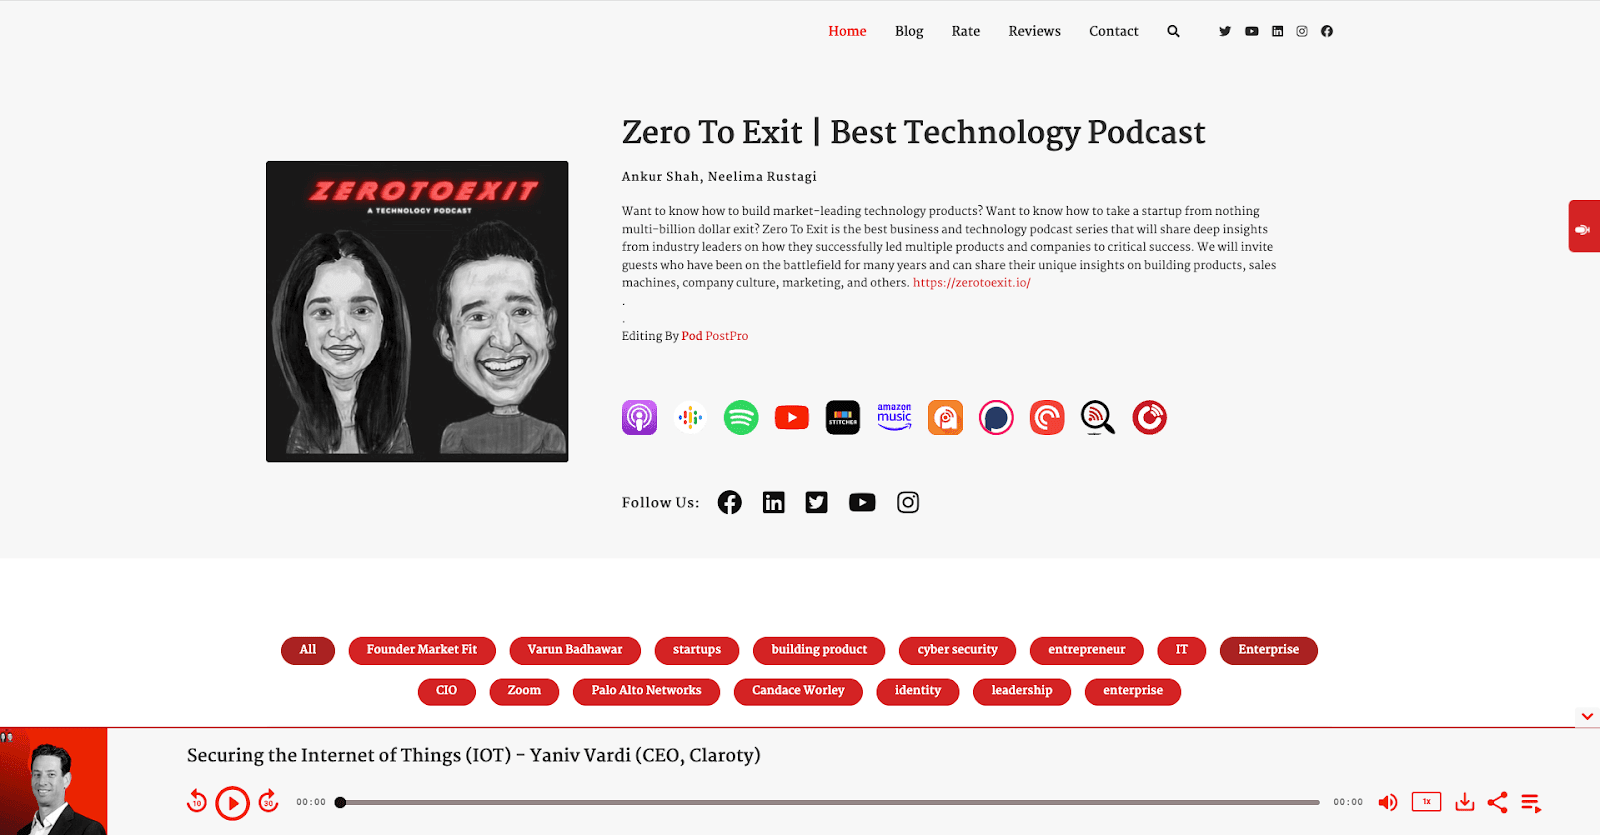 Zero to Exit podcast website